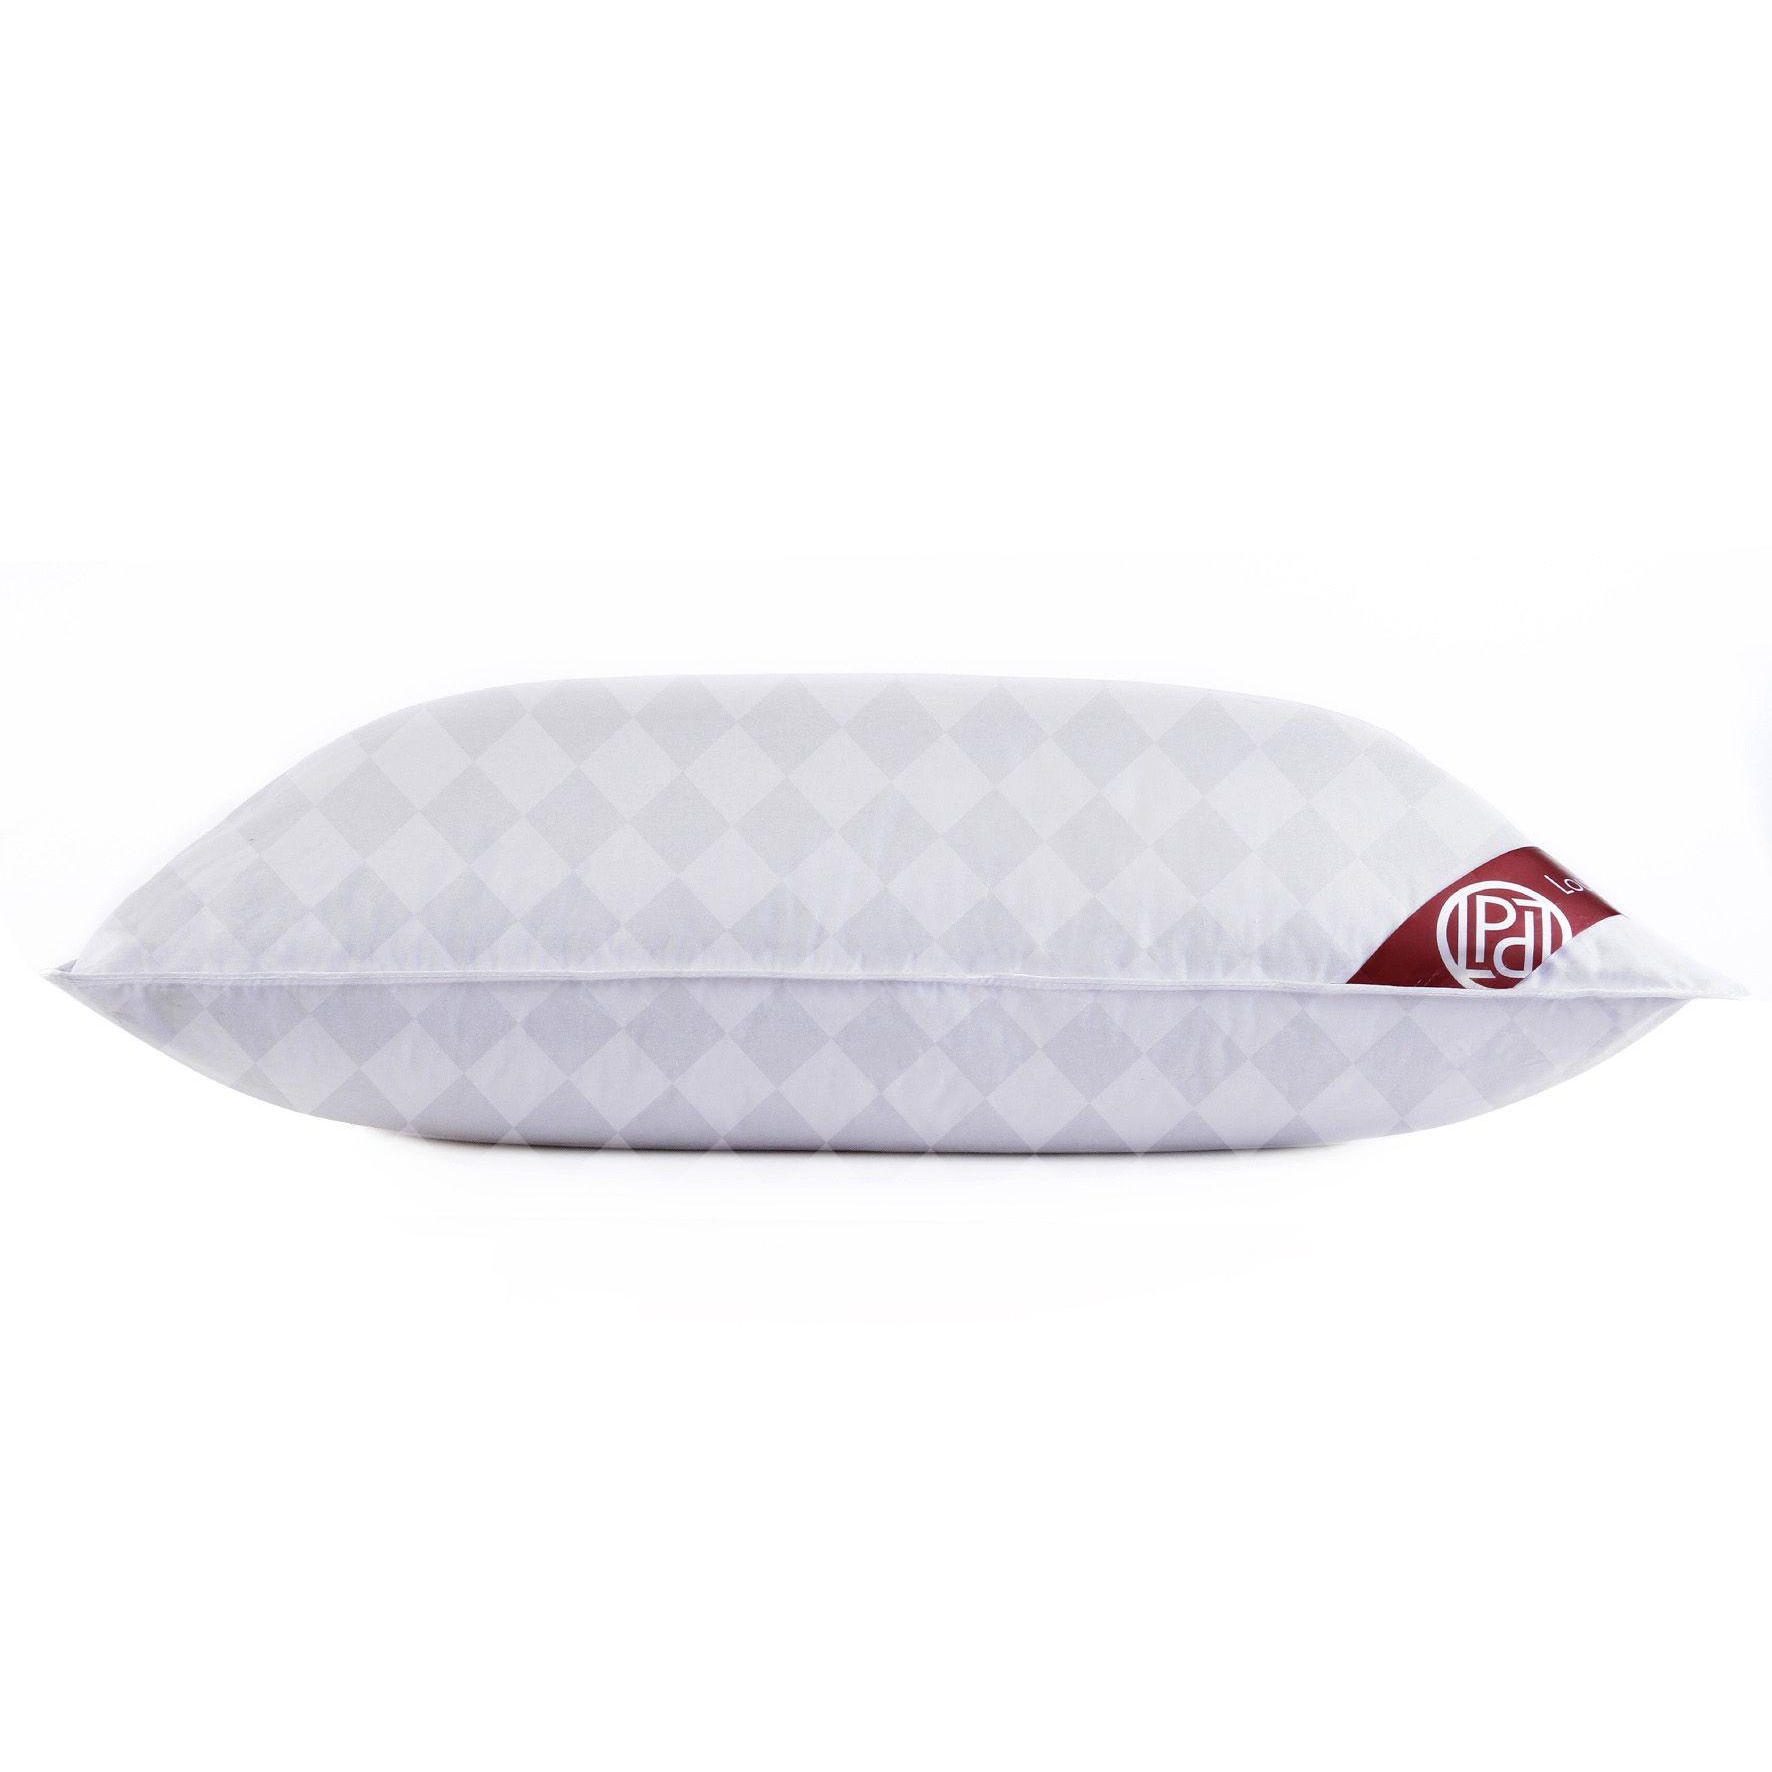 Пуховая подушка Louis Pascal Мишель белая с серым 50х70 см (ЛП1053) пуховое одеяло louis pascal николь бежевое 200х220 см лп2022